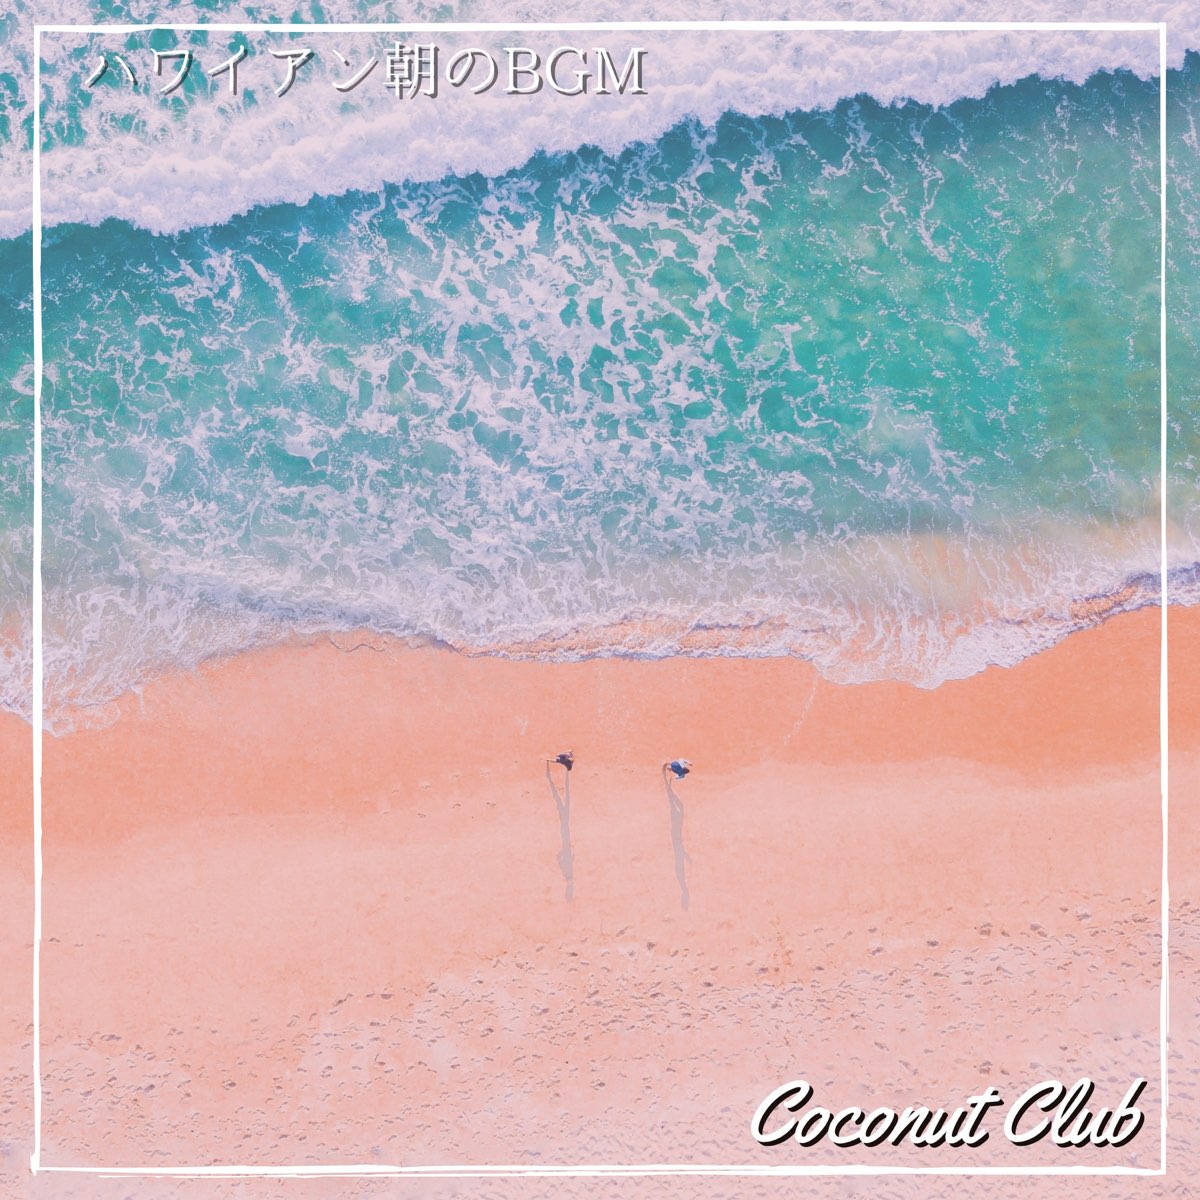 ‎ハワイアン朝のbgm - Album by Coconut Club - Apple Music